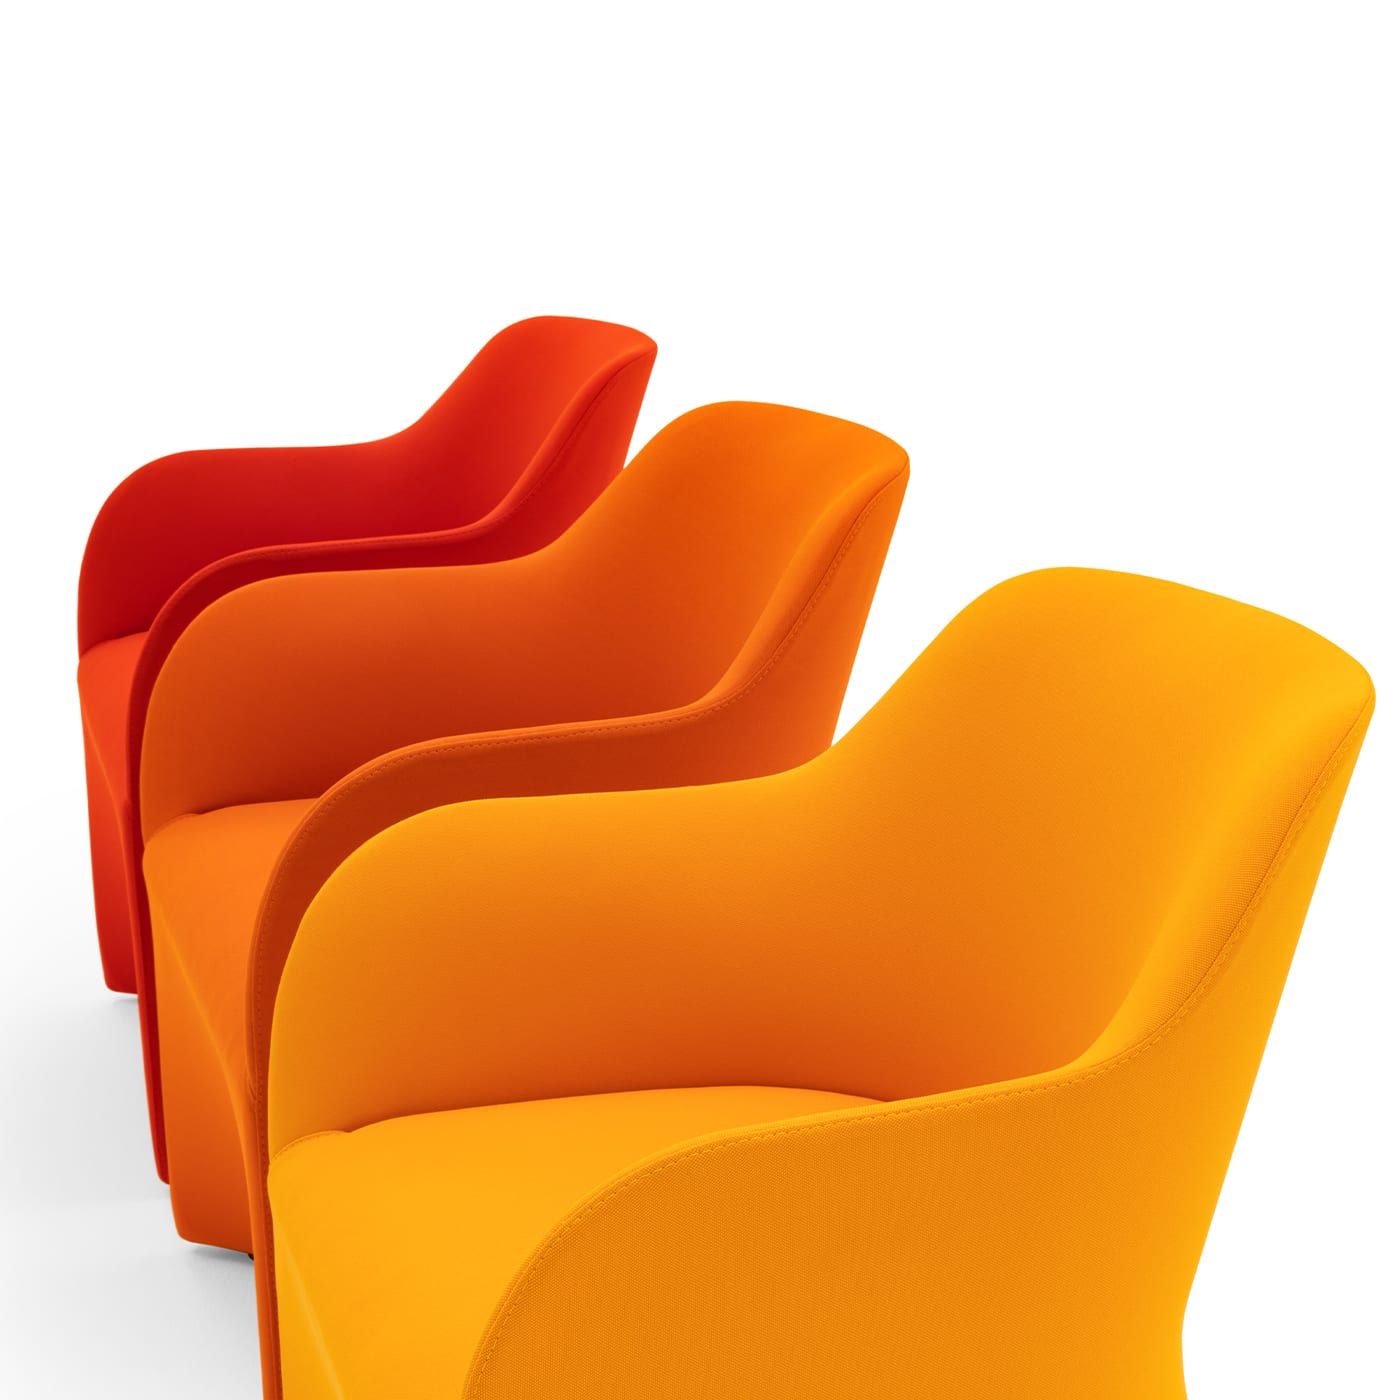 Maggy Big Orange Armchair by Basaglia + Rota Nodari - Viganò & C.